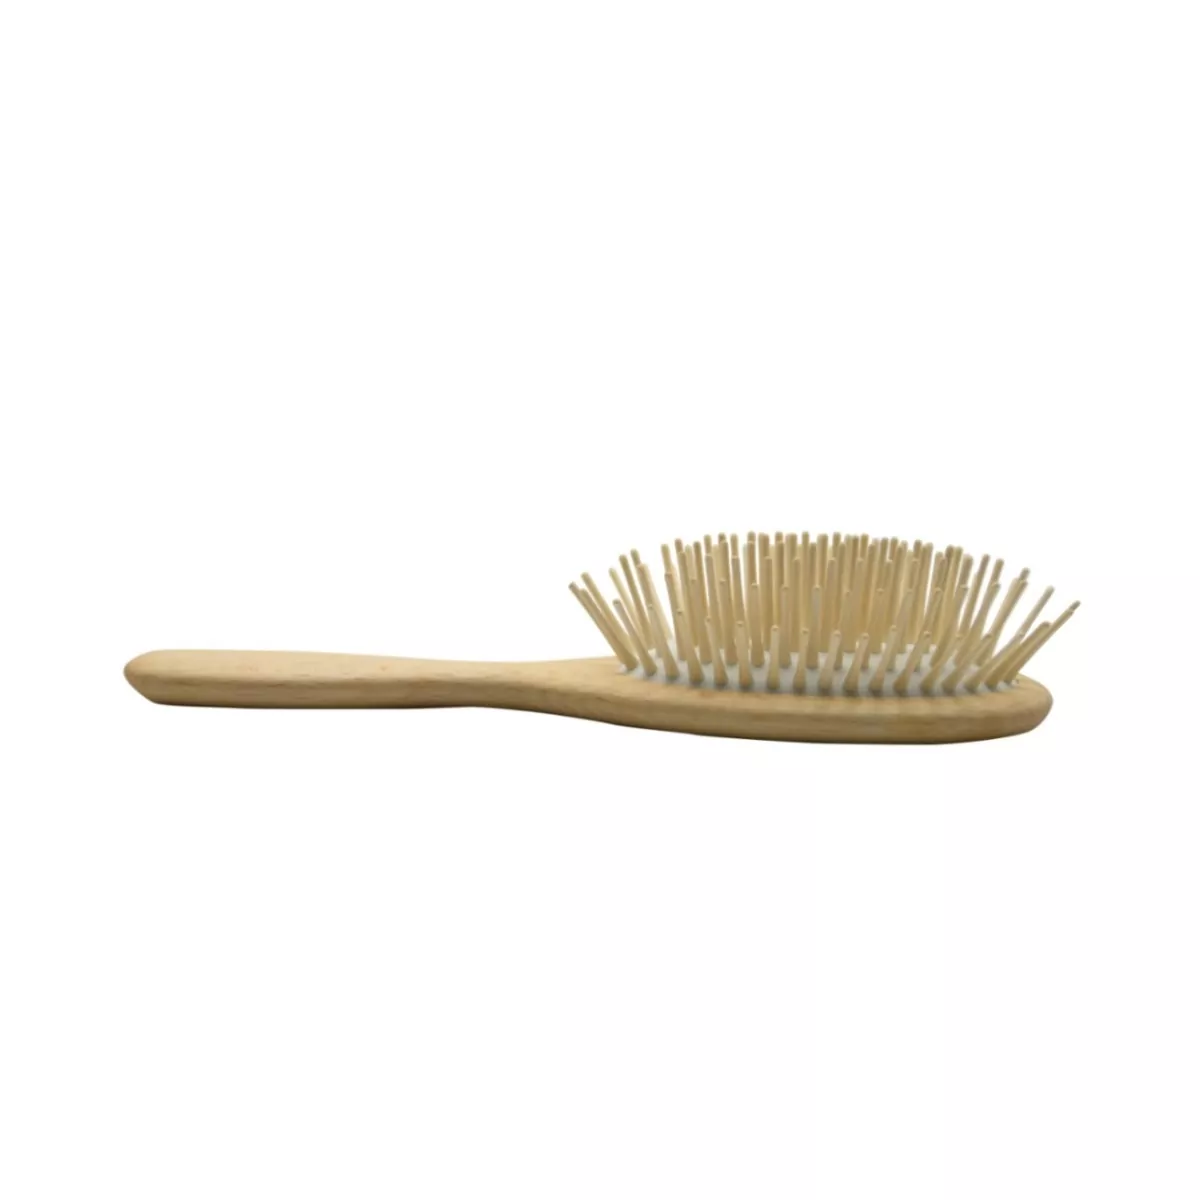 Cepillo de pelo ovalado de púas de madera extra-largas horizontal